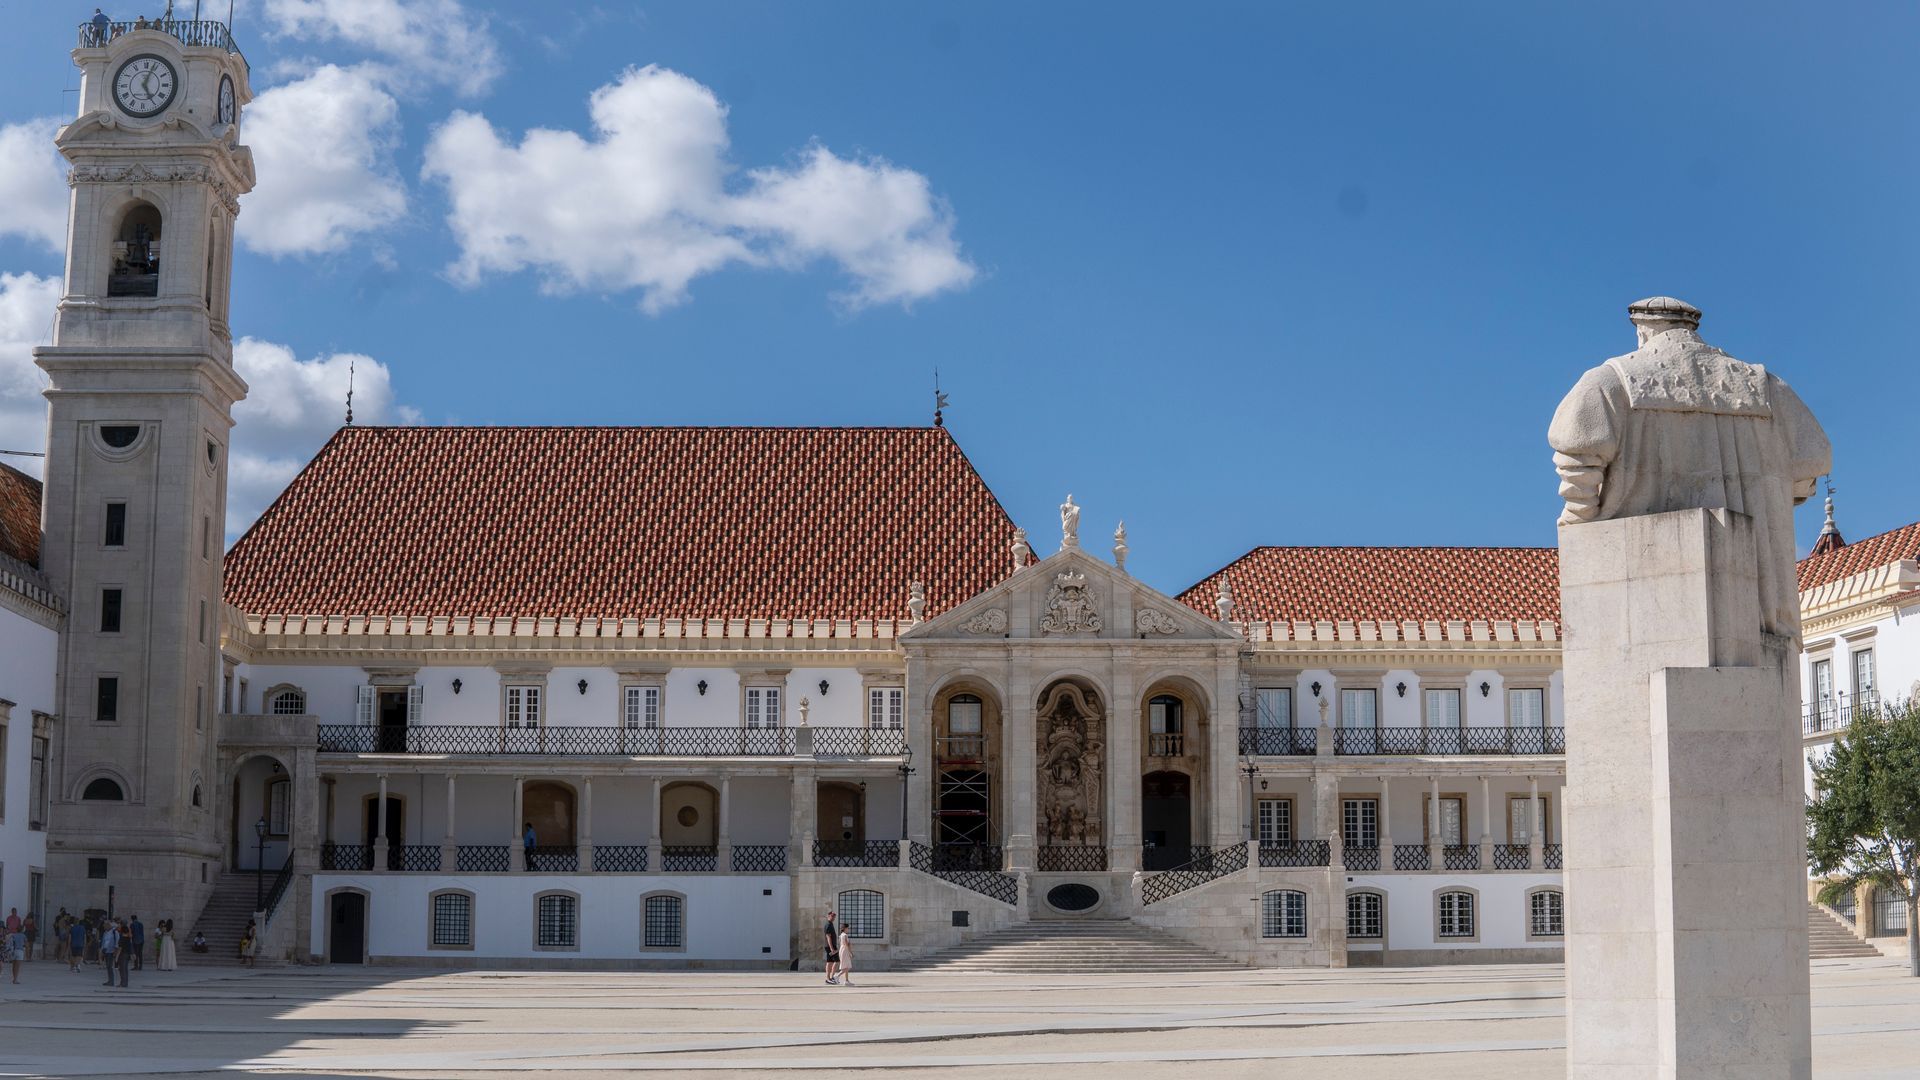 University's Royal Palace